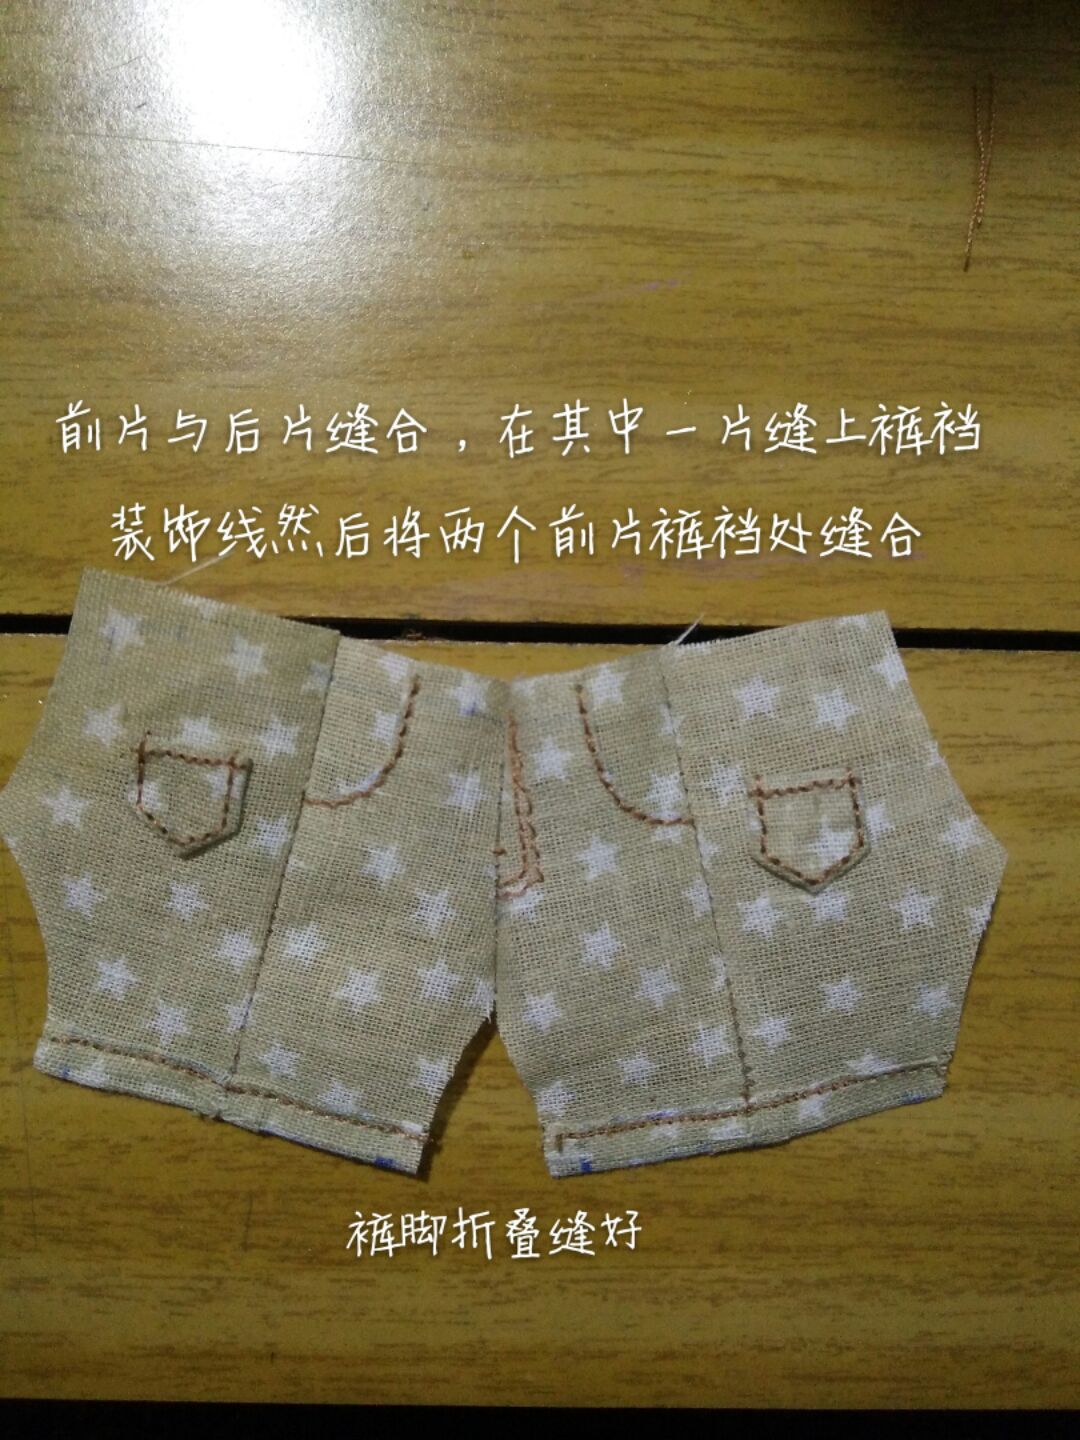 【娃衣教程】背带裤教程 第4步